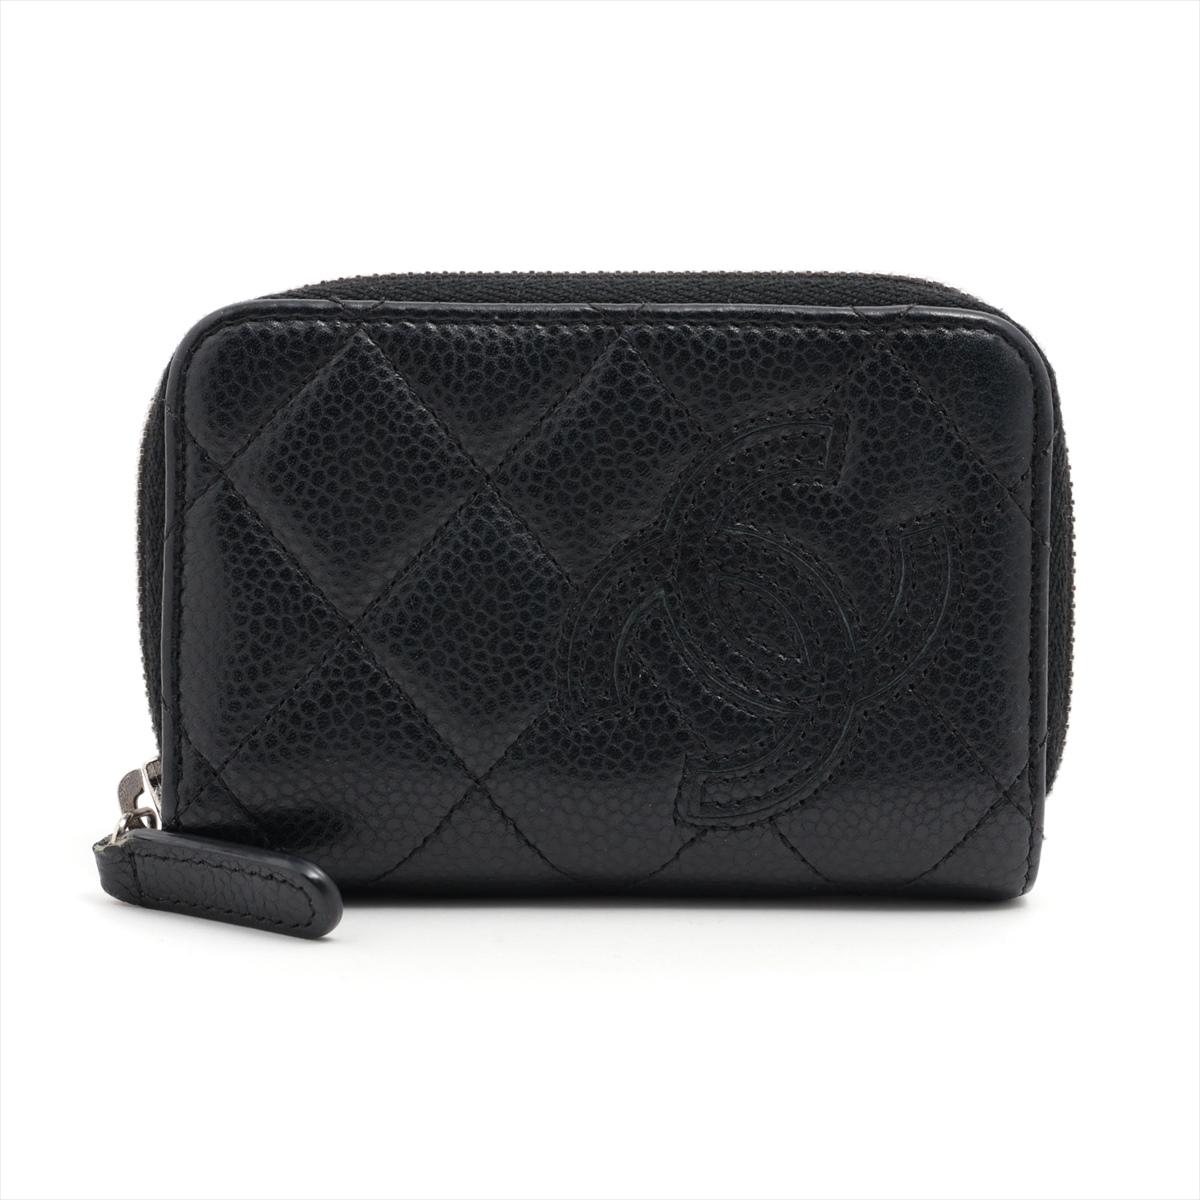 Die Chanel CC Logo Matelasse Caviar Skin Coin Case Zippy Wallet in Schwarz ist ein luxuriöses und vielseitiges Accessoire, das die Raffinesse der Marke Chanel verkörpert. Die aus hochwertigem Kaviarleder gefertigte Brieftasche ist mit dem für Chanel